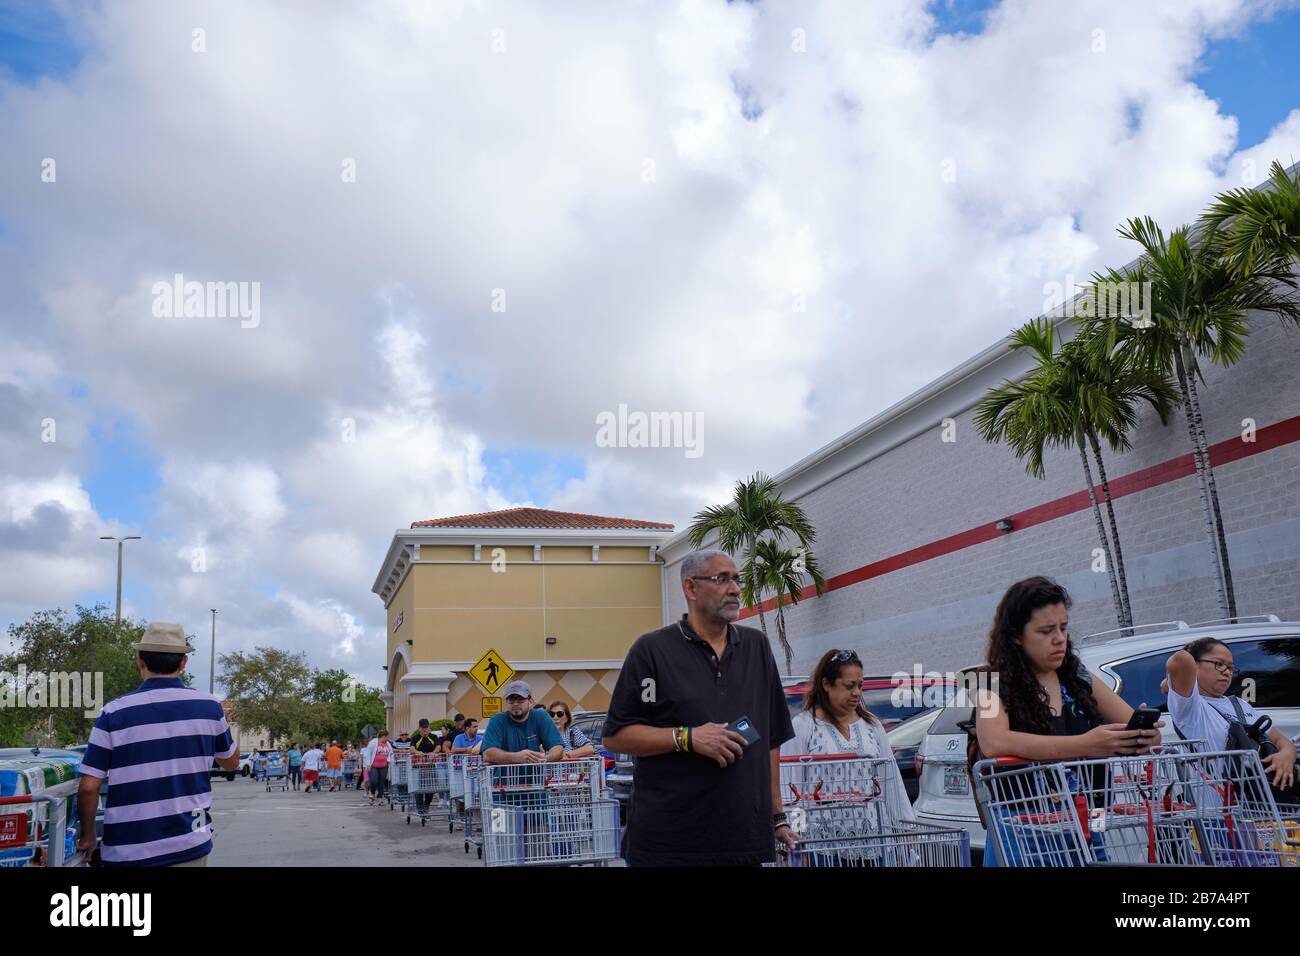 Samedi. 24 mars 2020 : de longues files d'acheteurs au magasin Costco à Miami, en Floride, à la suite de la pandémie de COVID-19. Les articles comme le papier toilette et les serviettes en papier sont en forte demande, ainsi que l'eau, les fournitures de nettoyage et les conserves. Banque D'Images